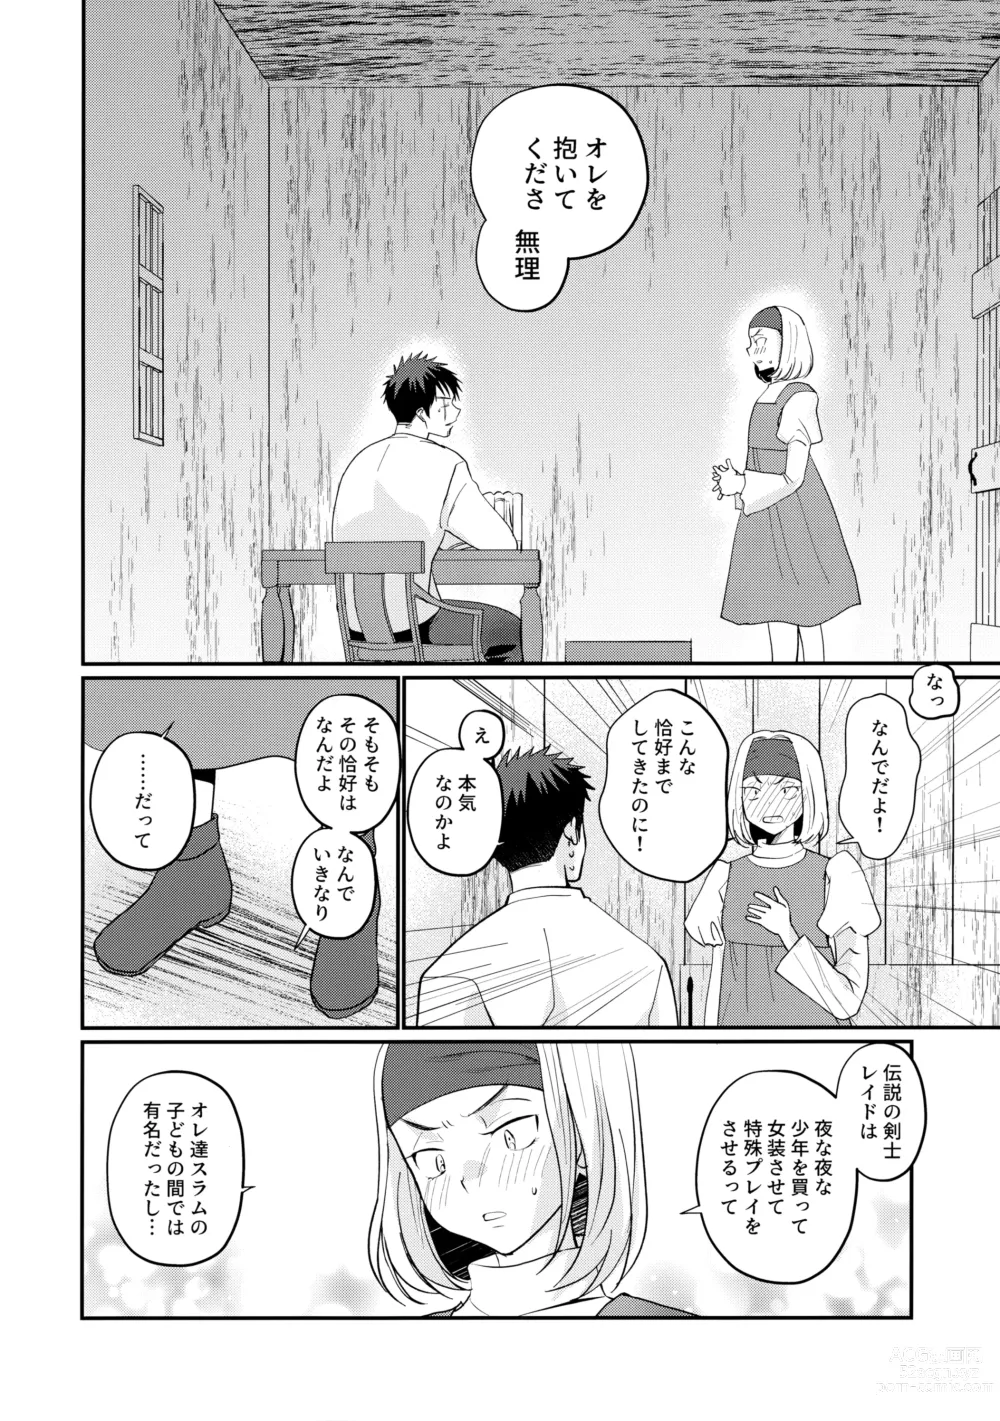 Page 7 of doujinshi Saikyou no Kenshi ni Tensei Shita kedo Kyouminai kara Deshi to Yamaoku Futarigurashi